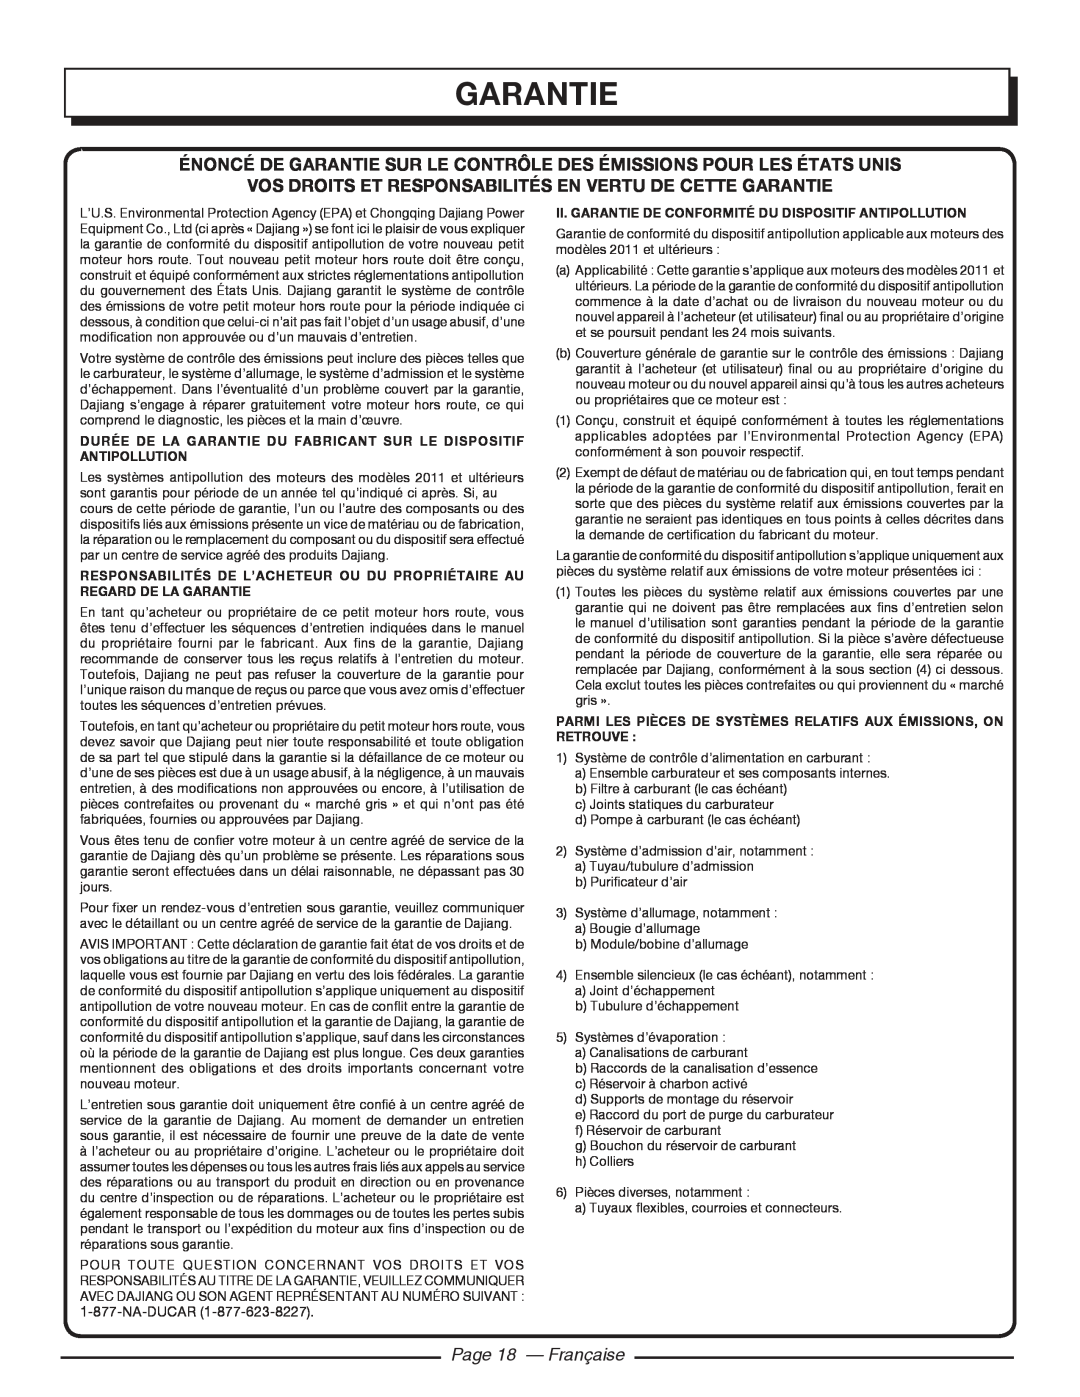 Homelite UT80516 Énoncé De Garantie Sur Le Contrôle Des Émissions Pour Les États Unis, Page 18 - Française, Na-Ducar 